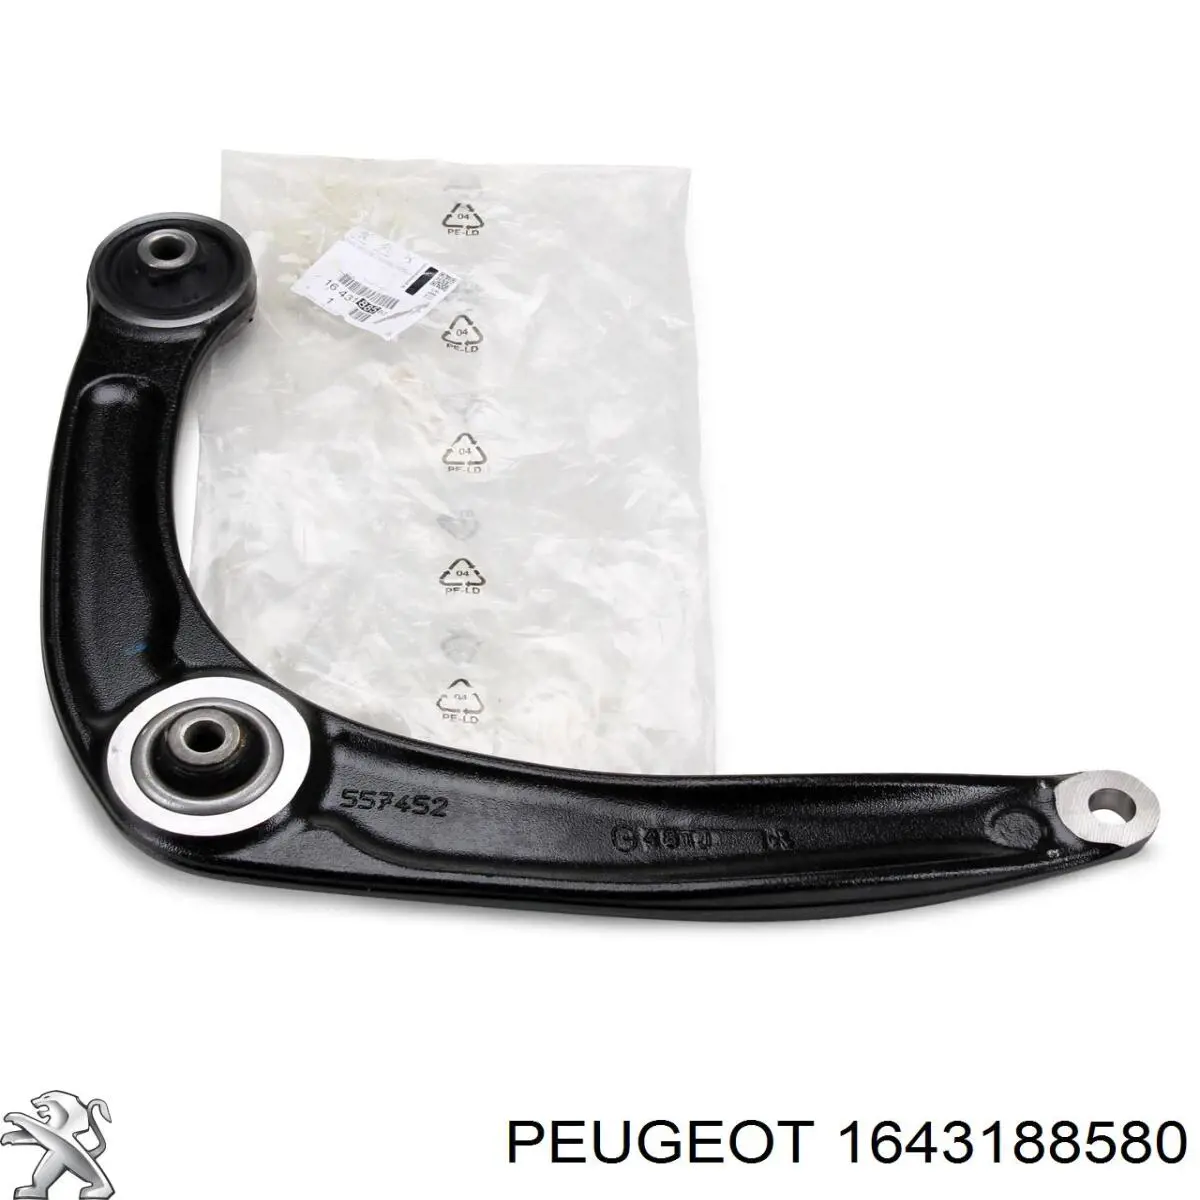 1643188580 Peugeot/Citroen рычаг передней подвески нижний левый